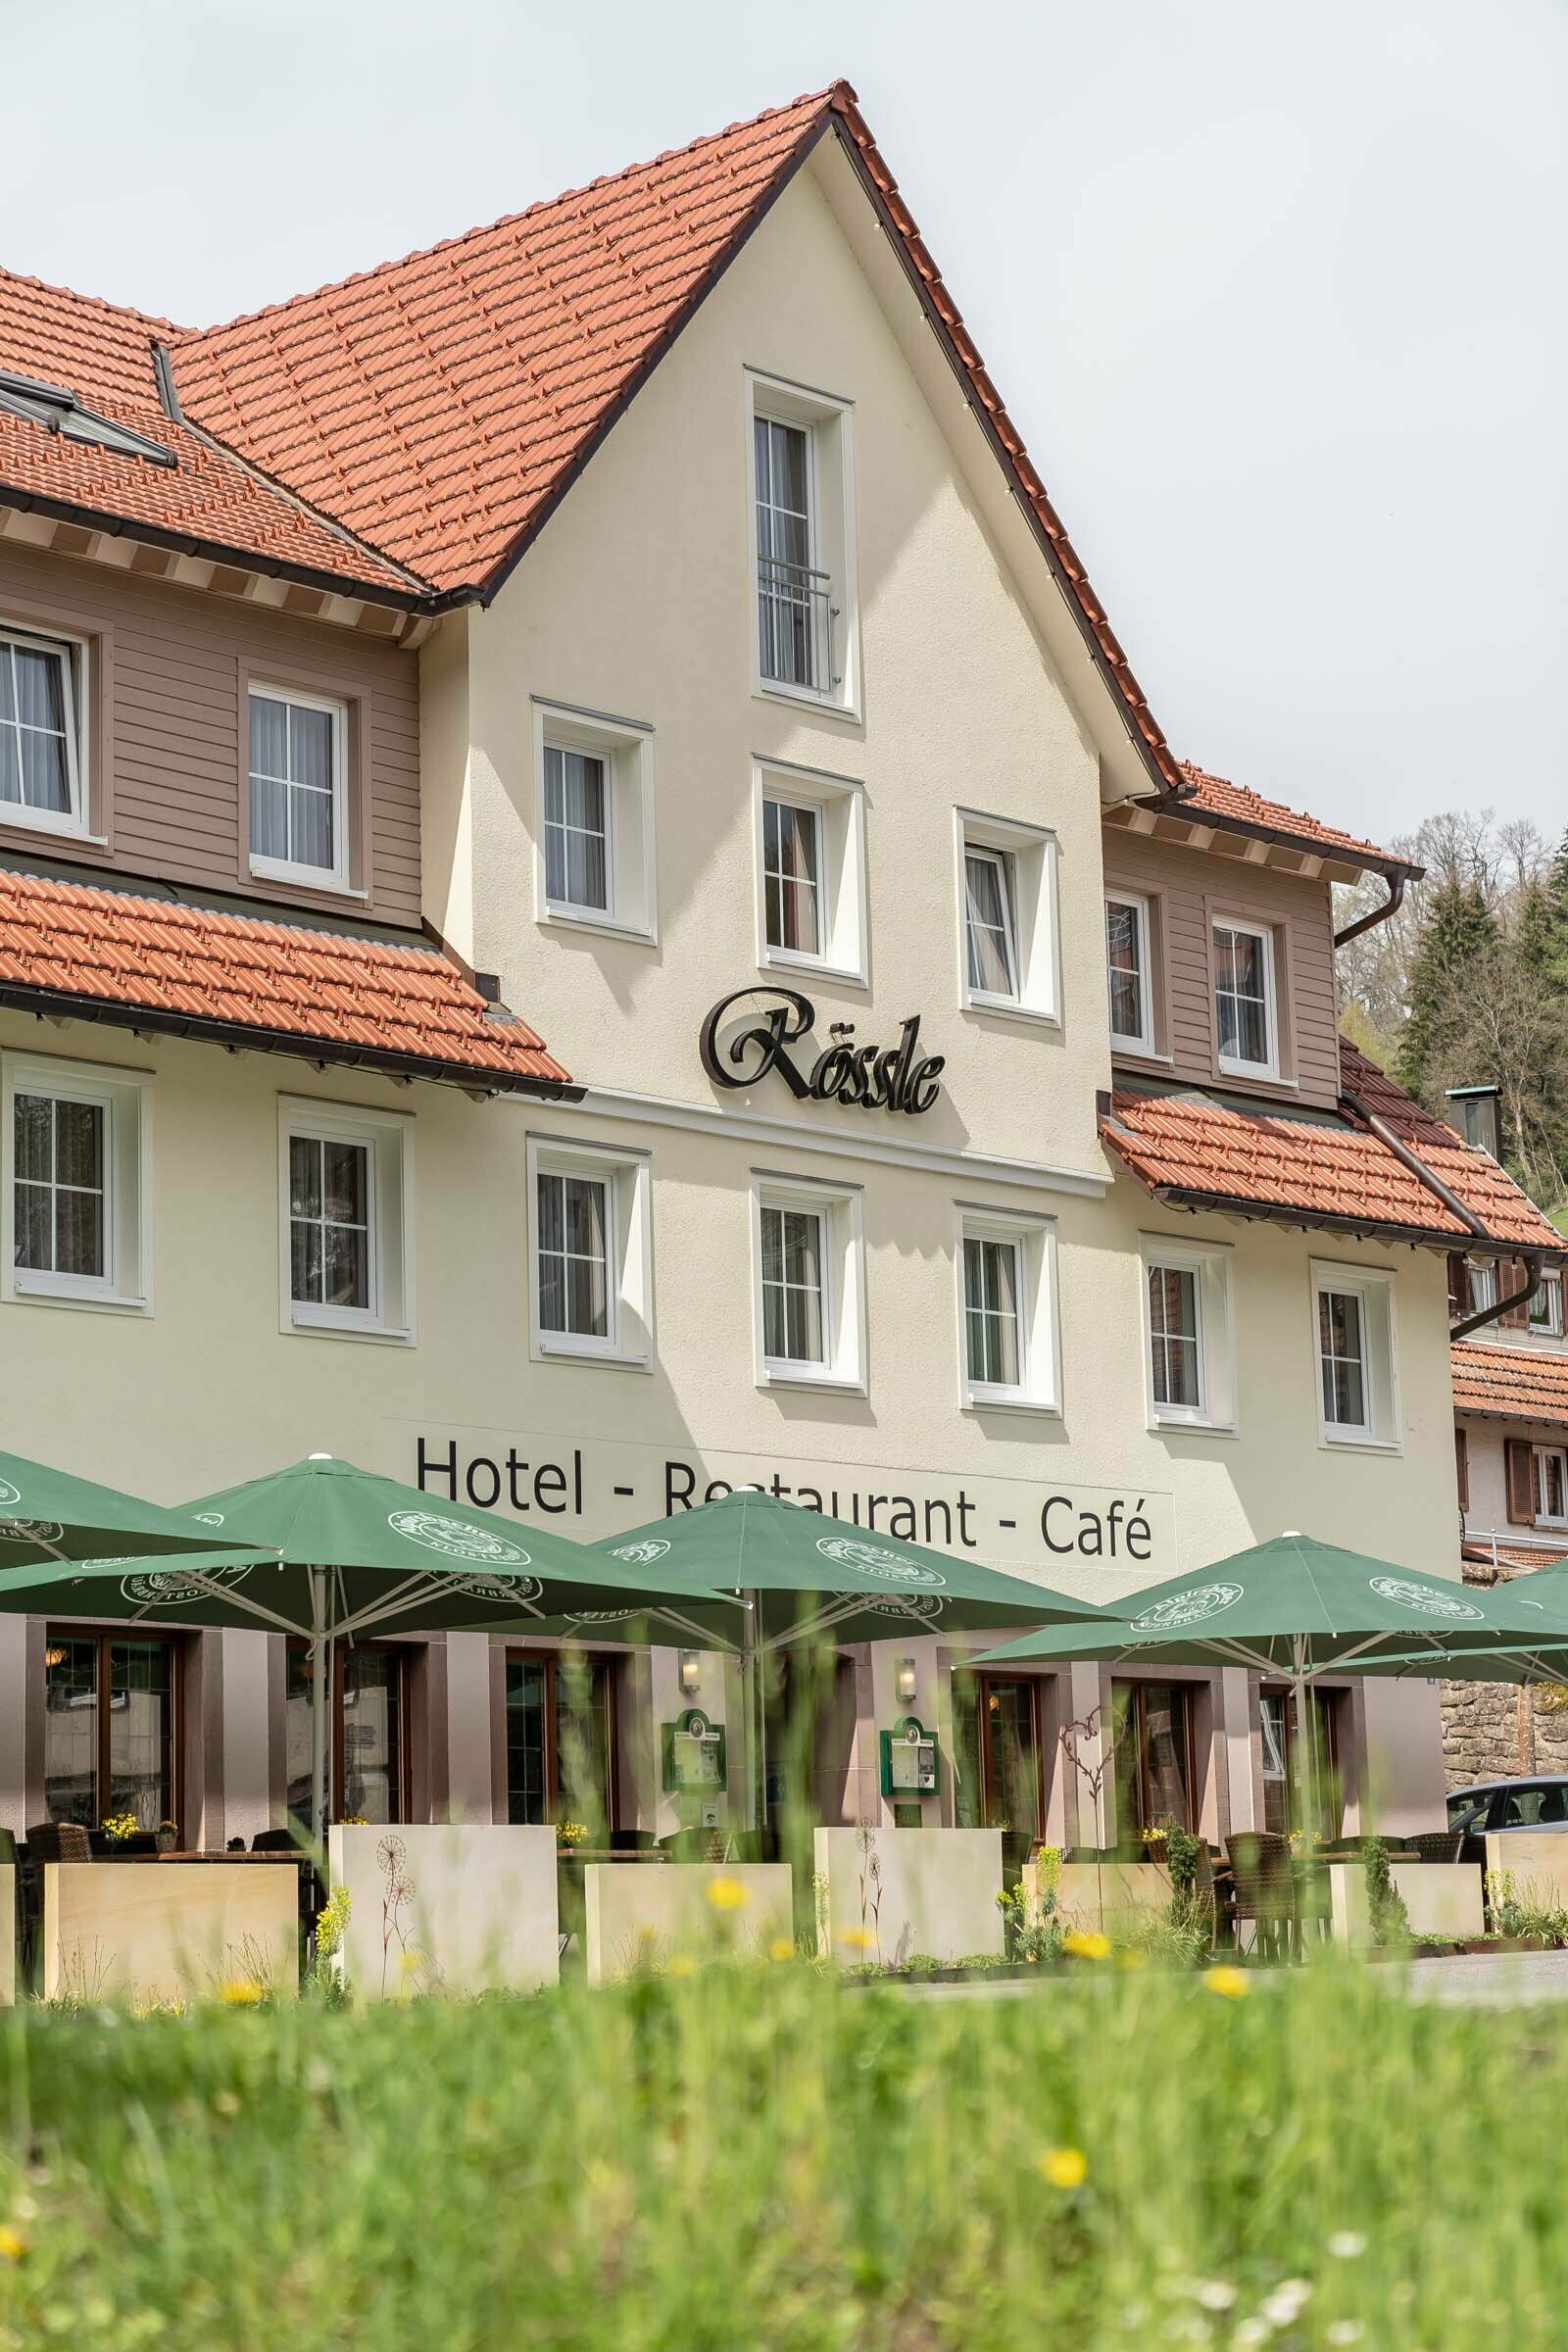 3 Tage Auszeit im Schwarzwald inkl. Aqua-Thermo-Jet Massage – Hotel Rössle Berneck  in Altensteig, Baden-Württemberg inkl. Halbpension